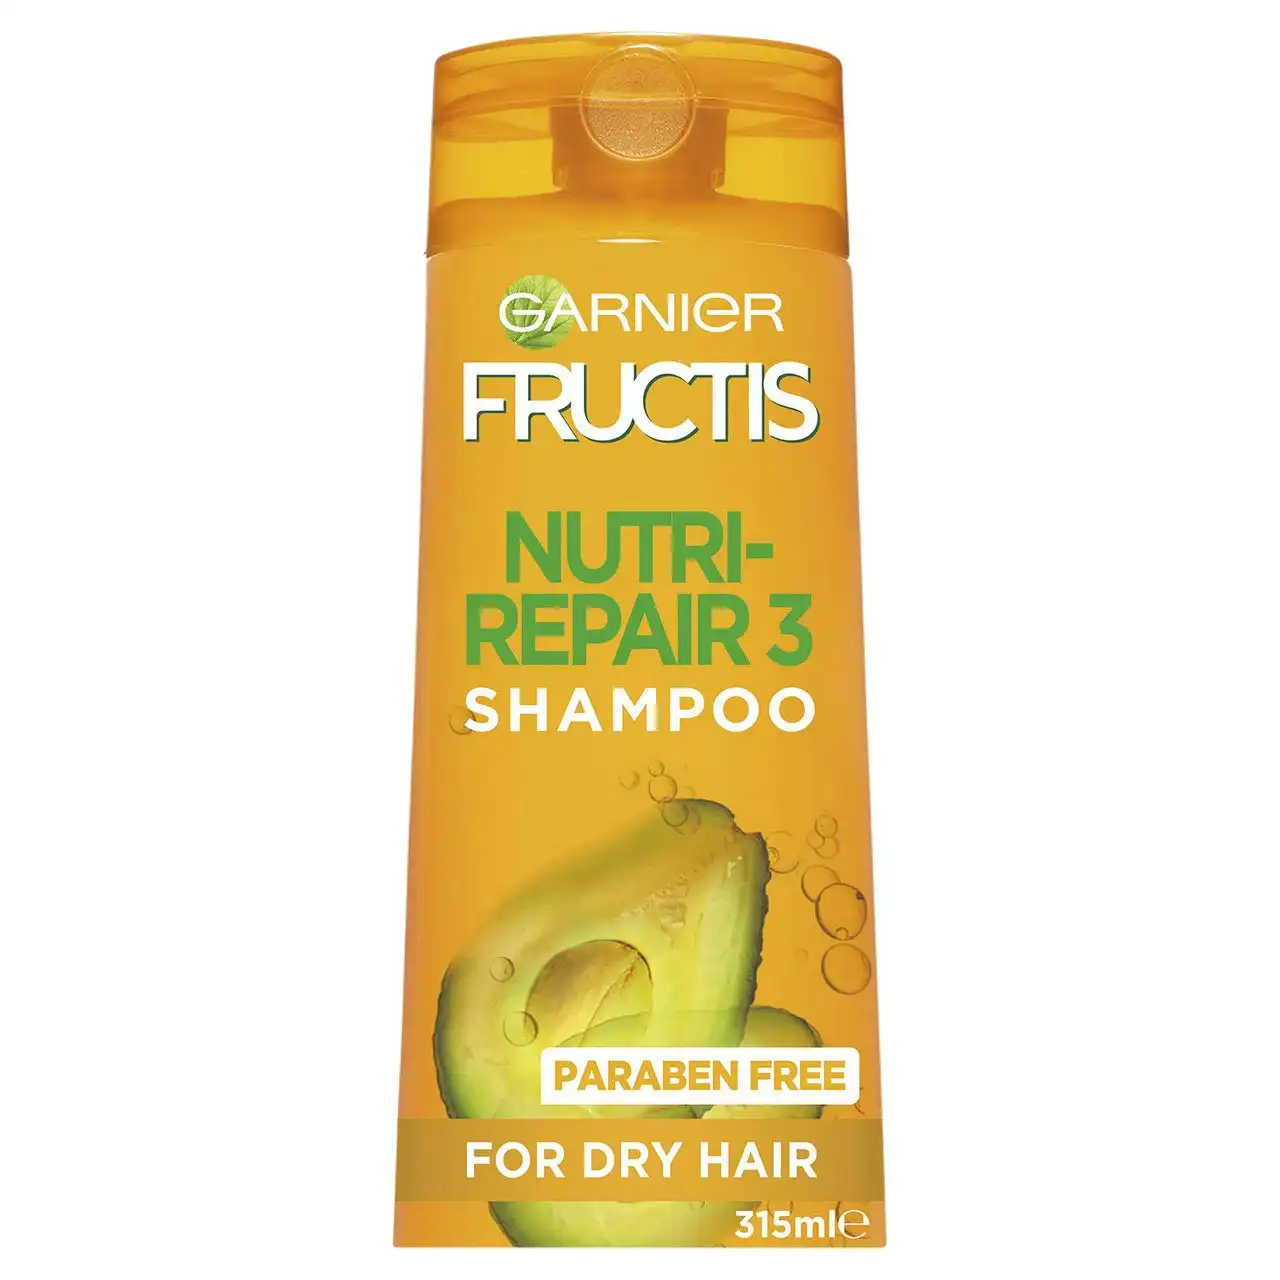 Garnier Fructis Nutri-Repair 3 Shampoo 315ml for Dry Hair